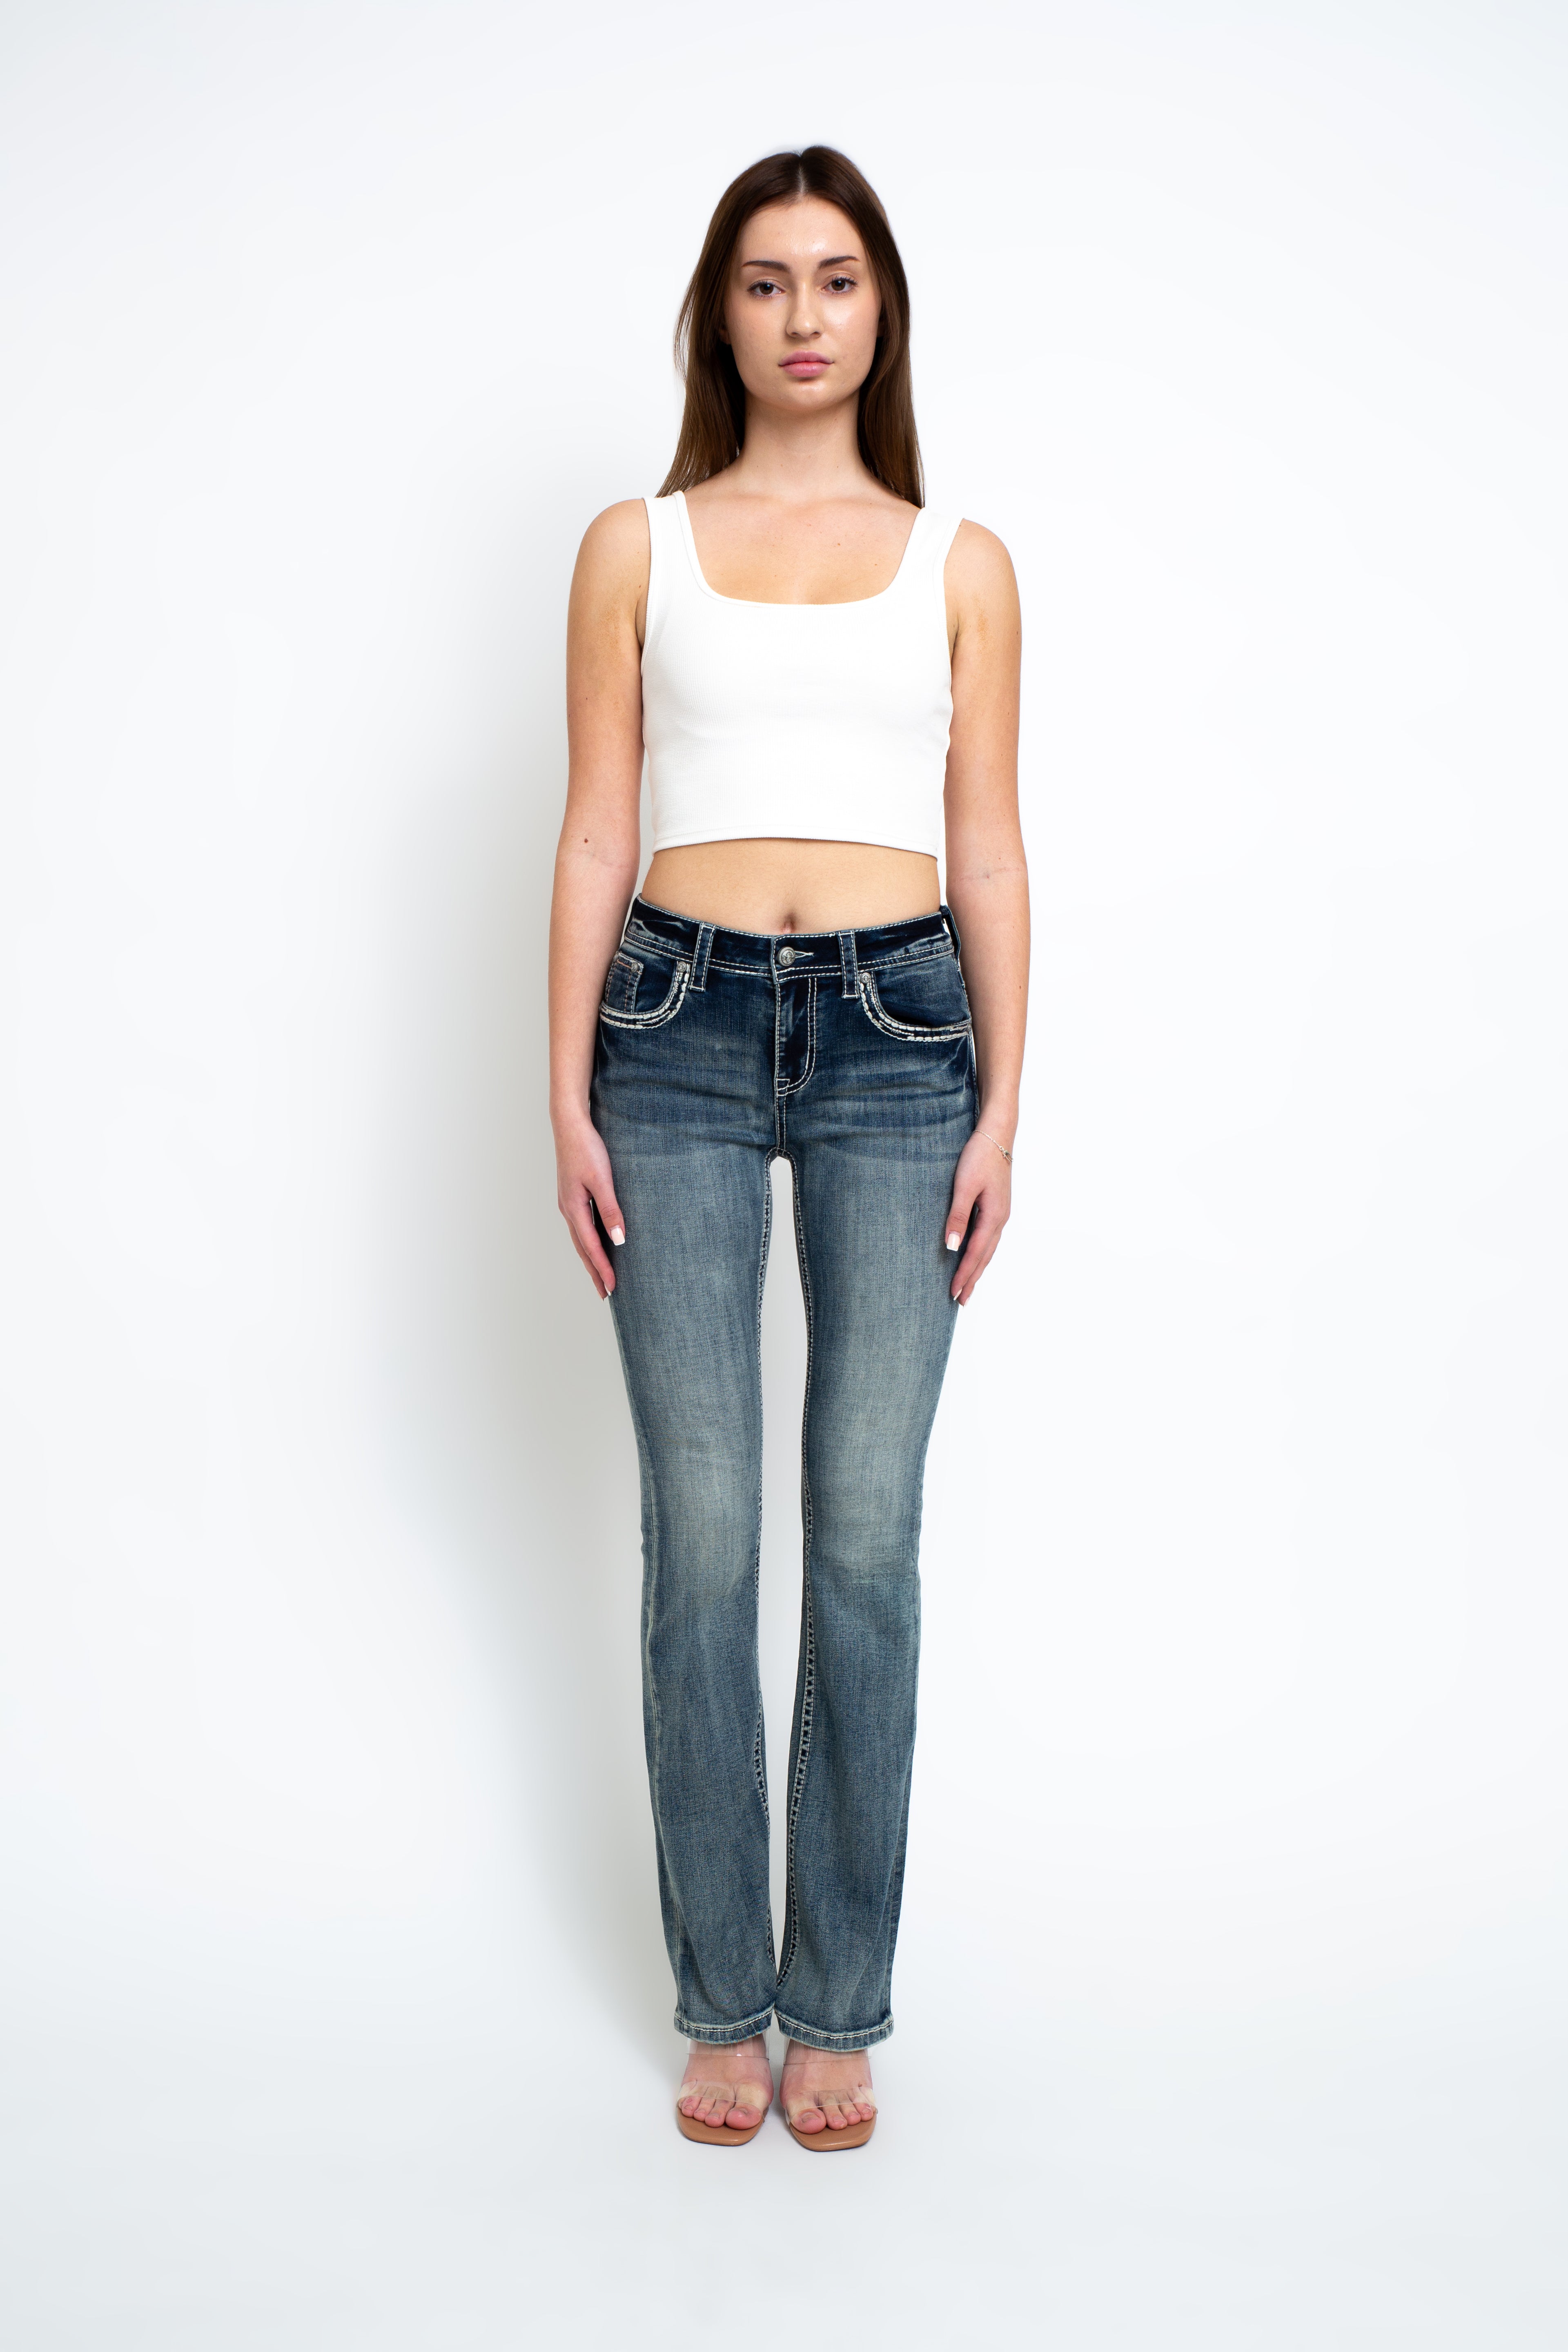 embellished-jeans-embellish-jeans-womens-embellished-jeans-grace-in-la-denim